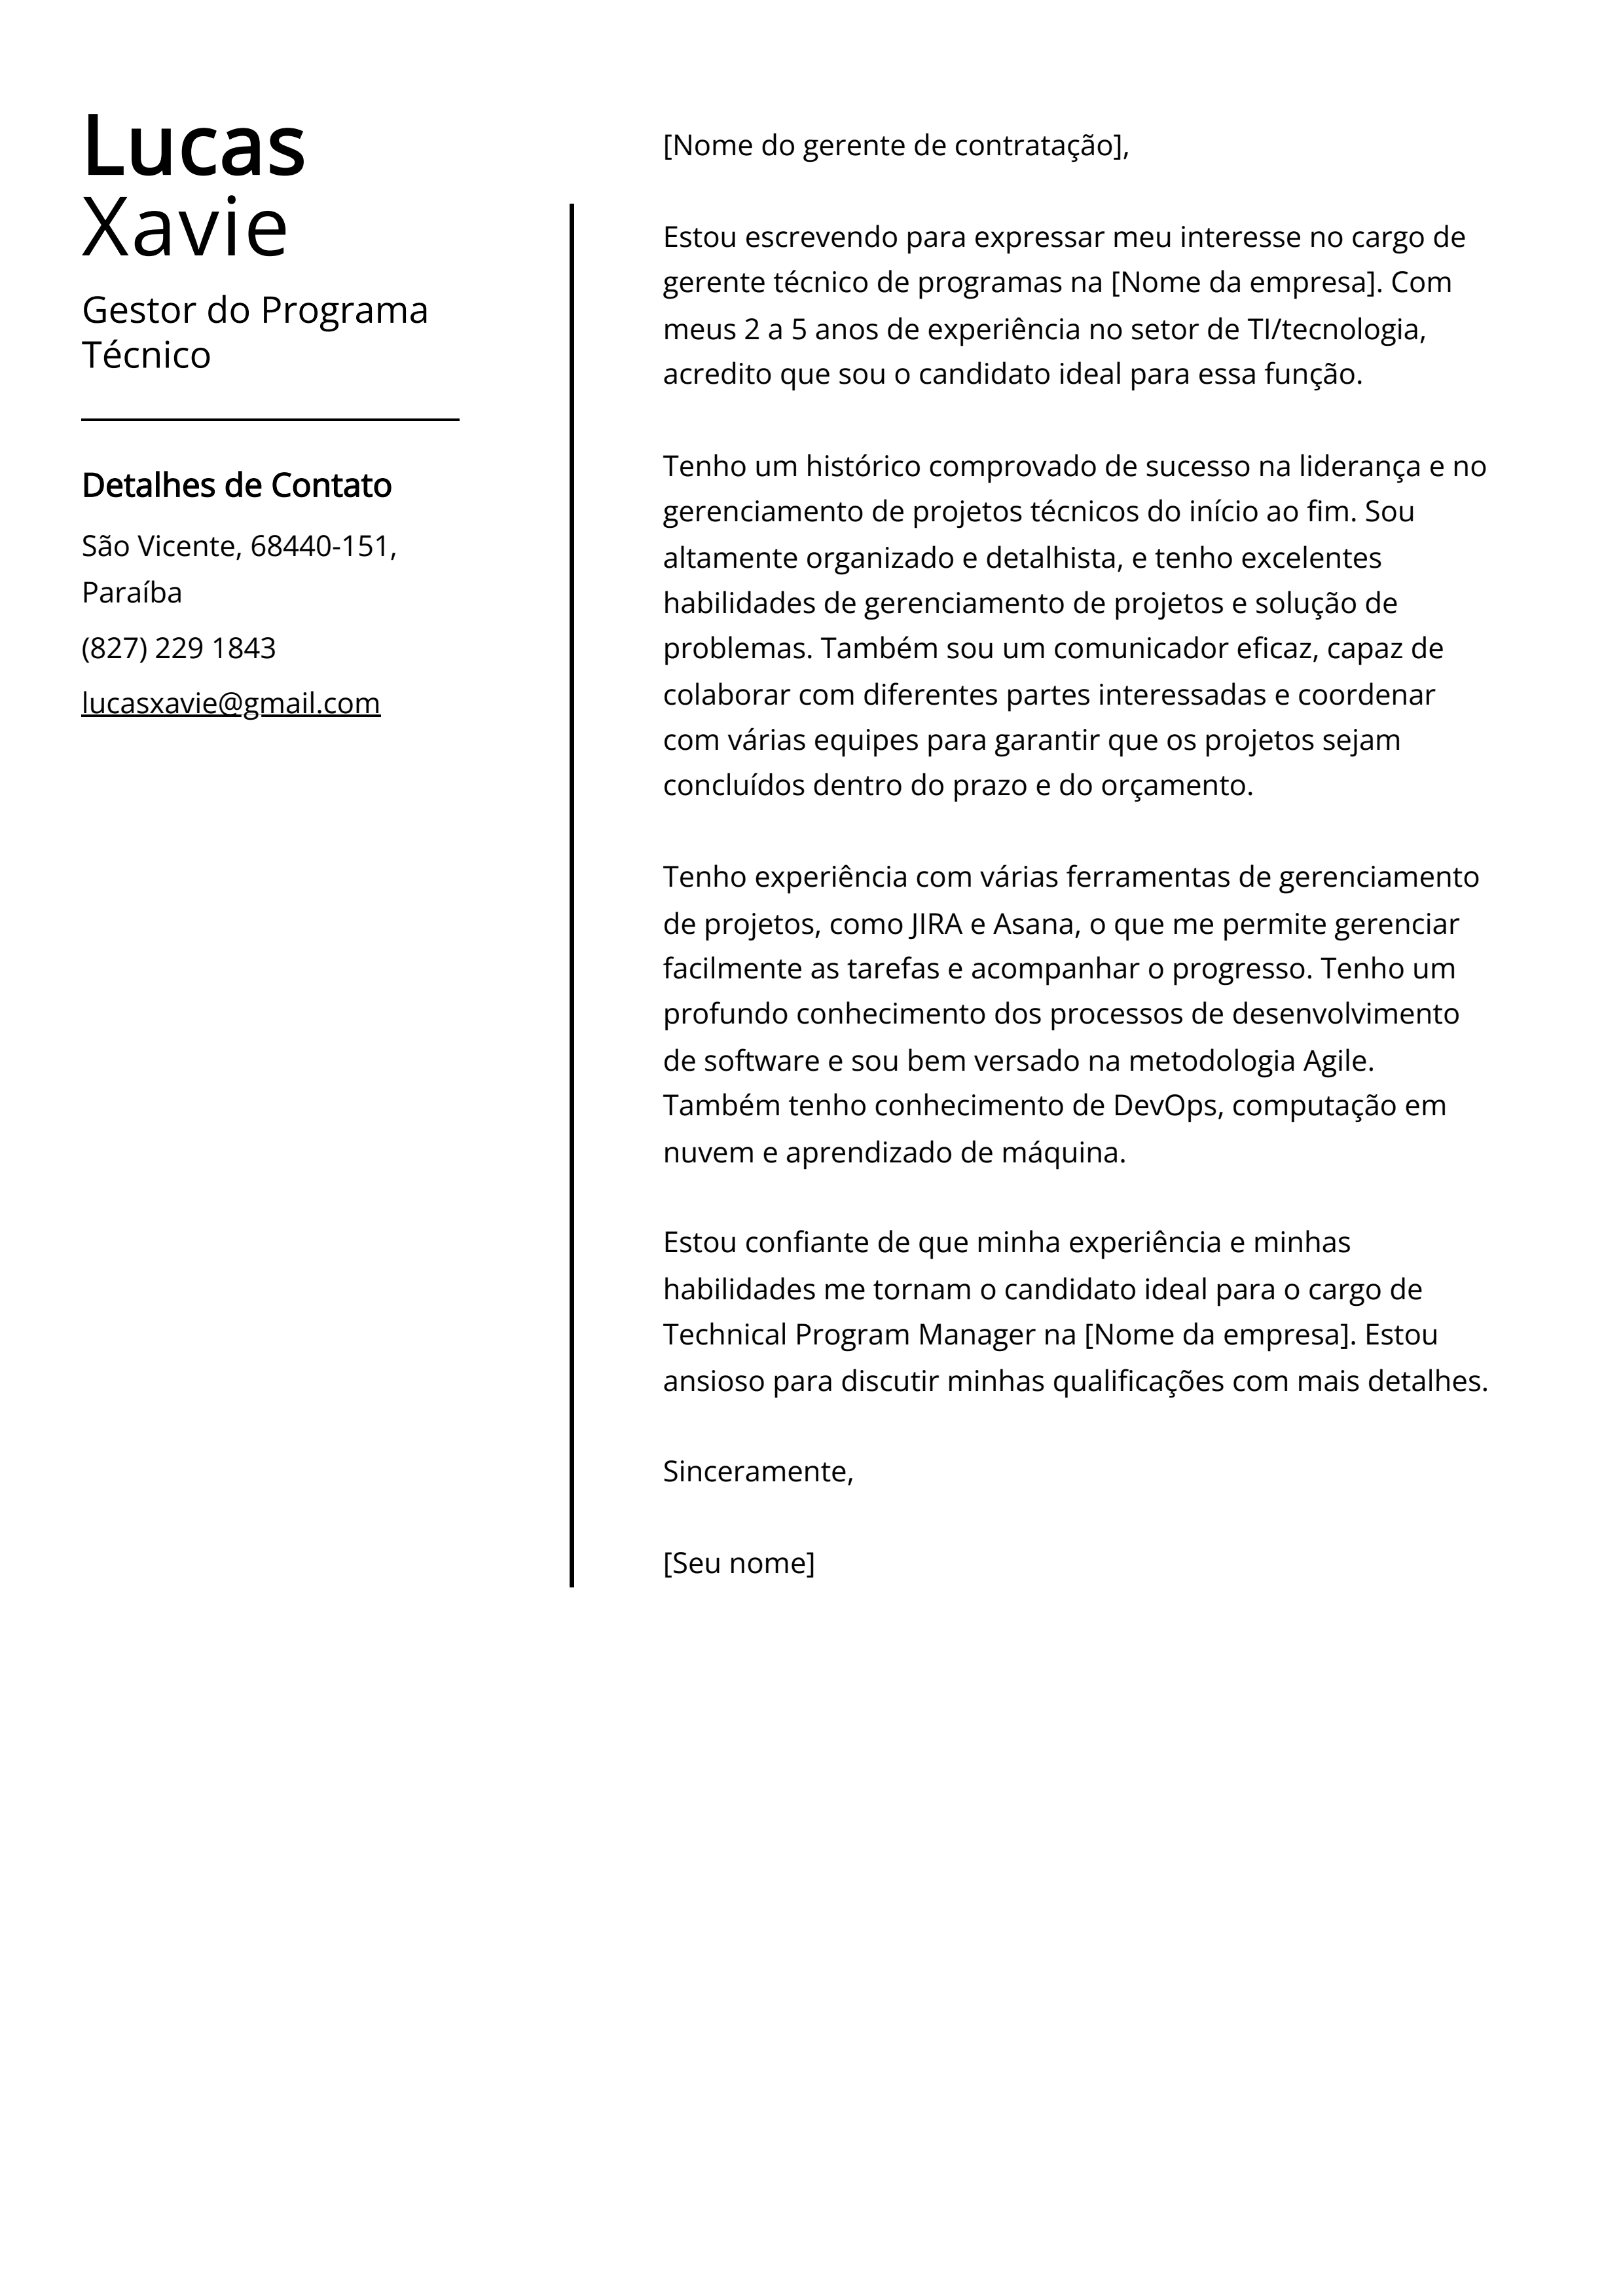 Exemplo de carta de apresentação do Gestor do Programa Técnico